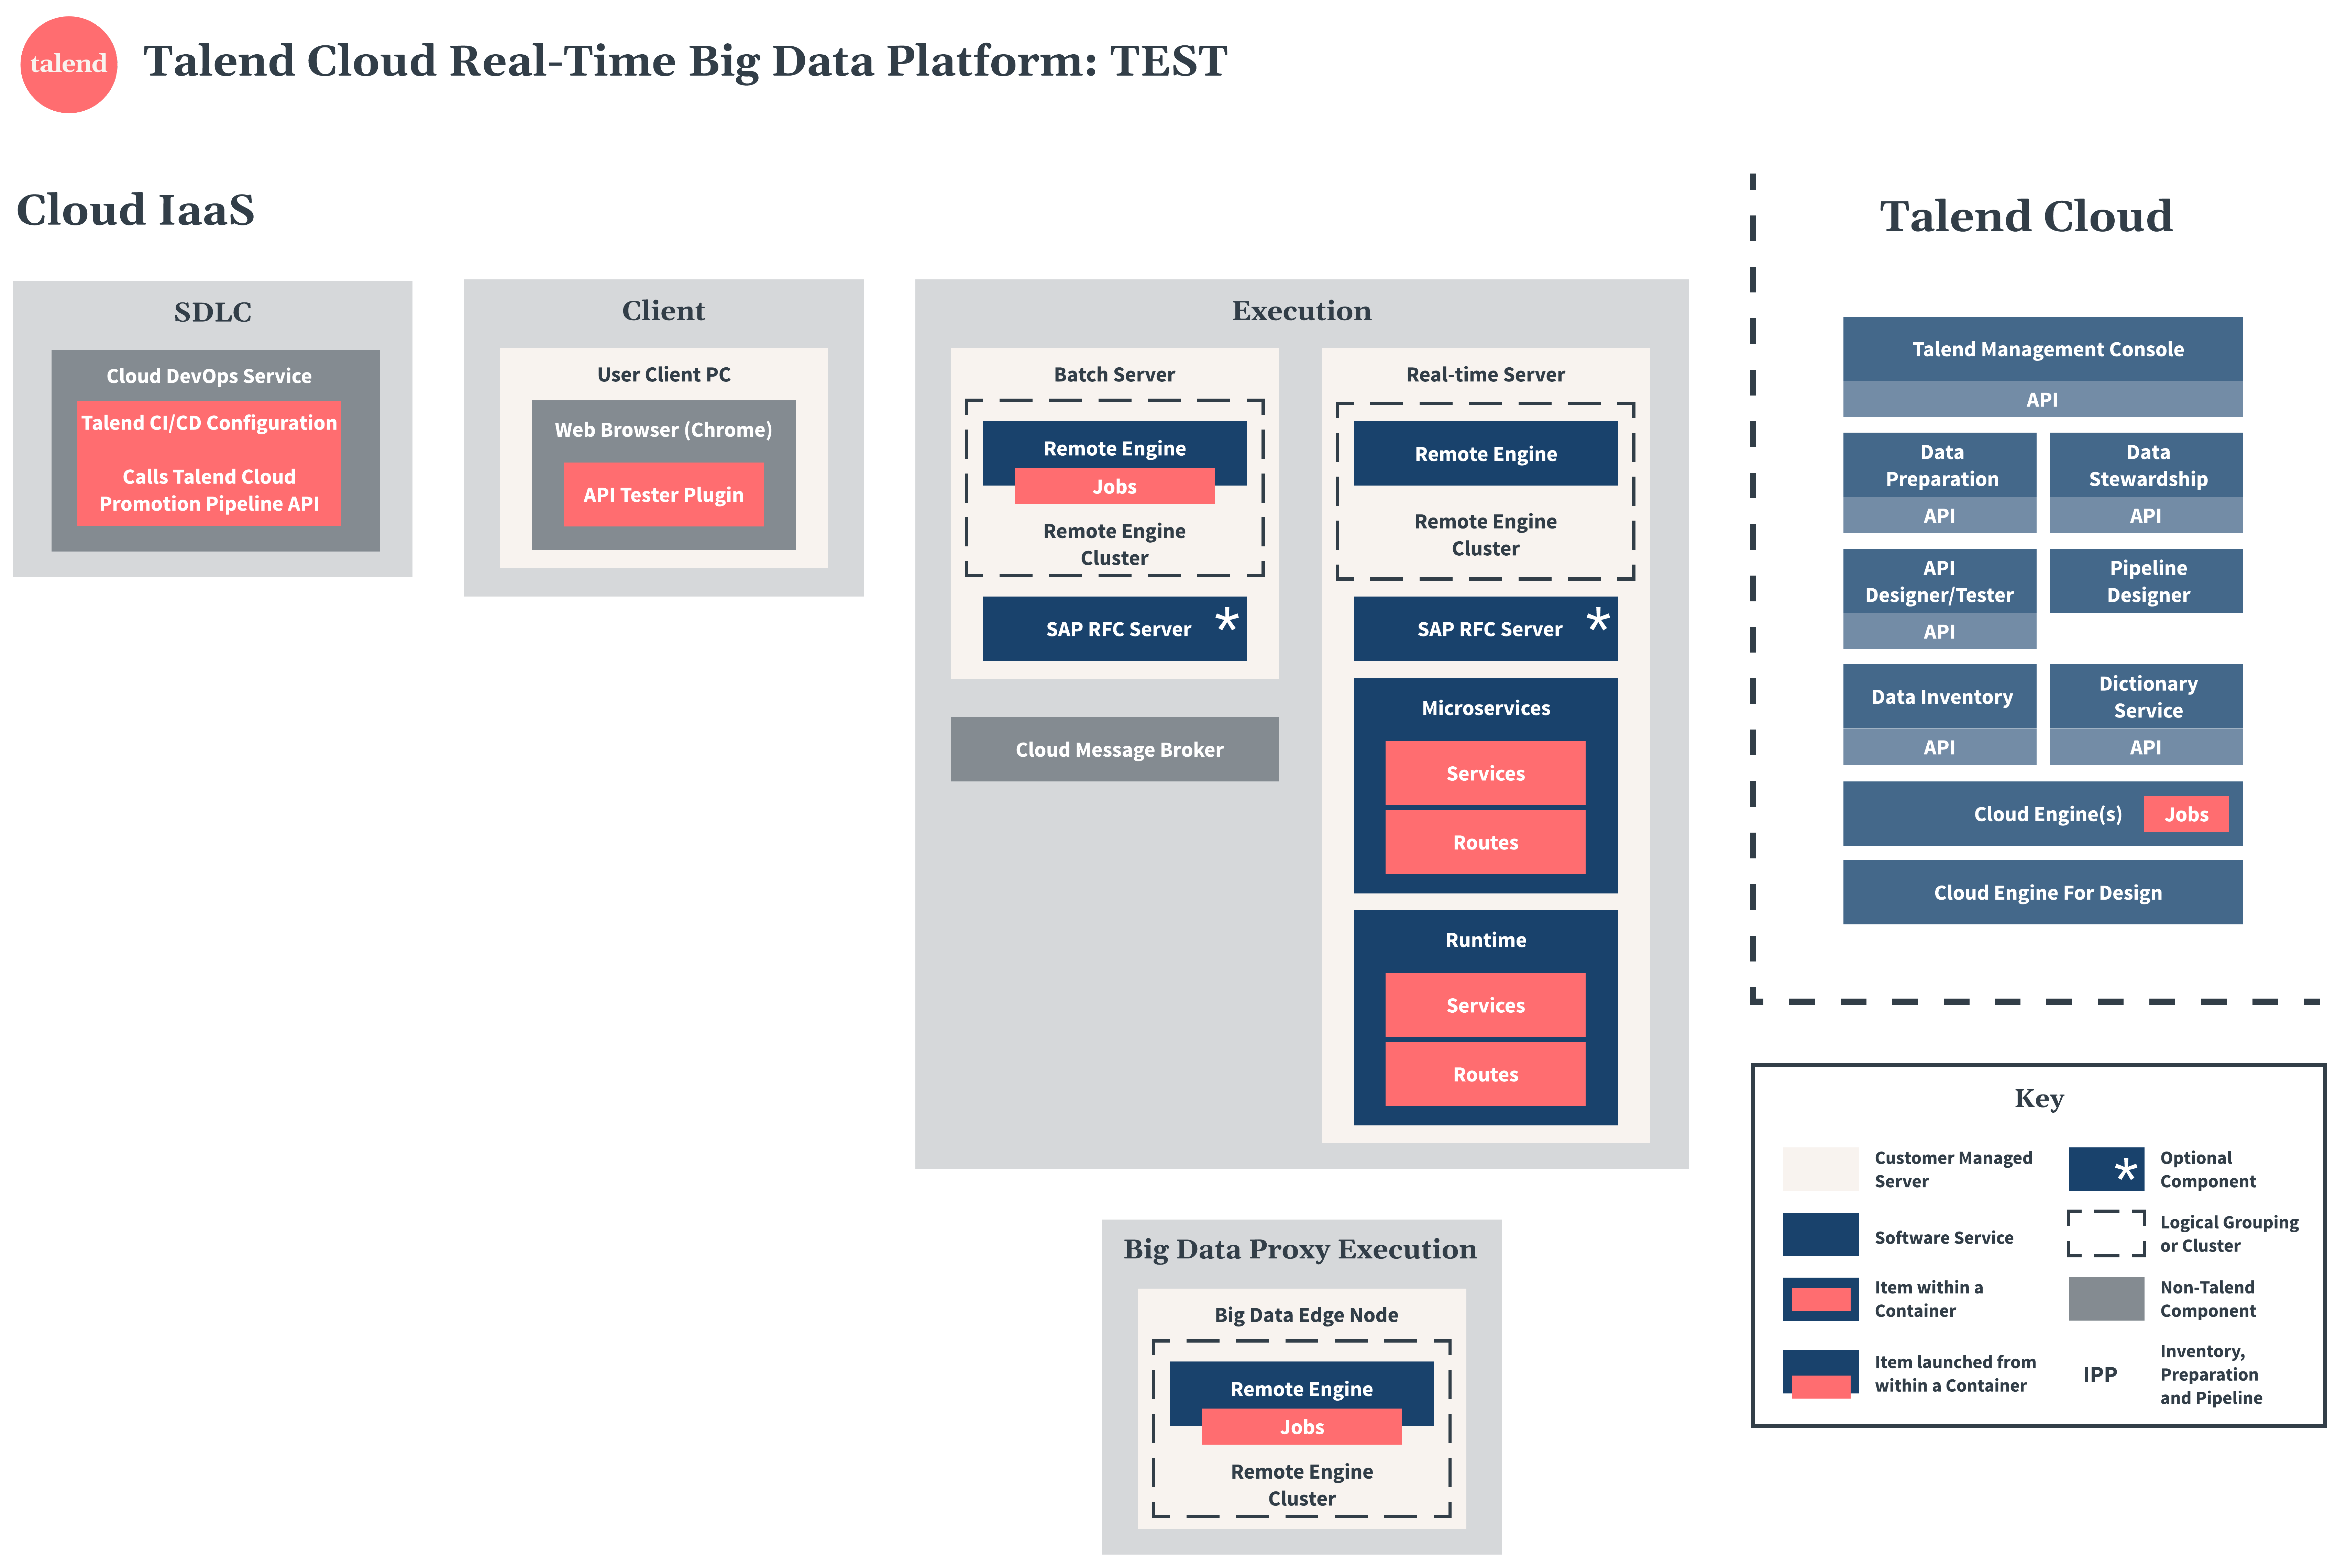 Diagramme de test de Talend Cloud Real-Time Big Data Platform.